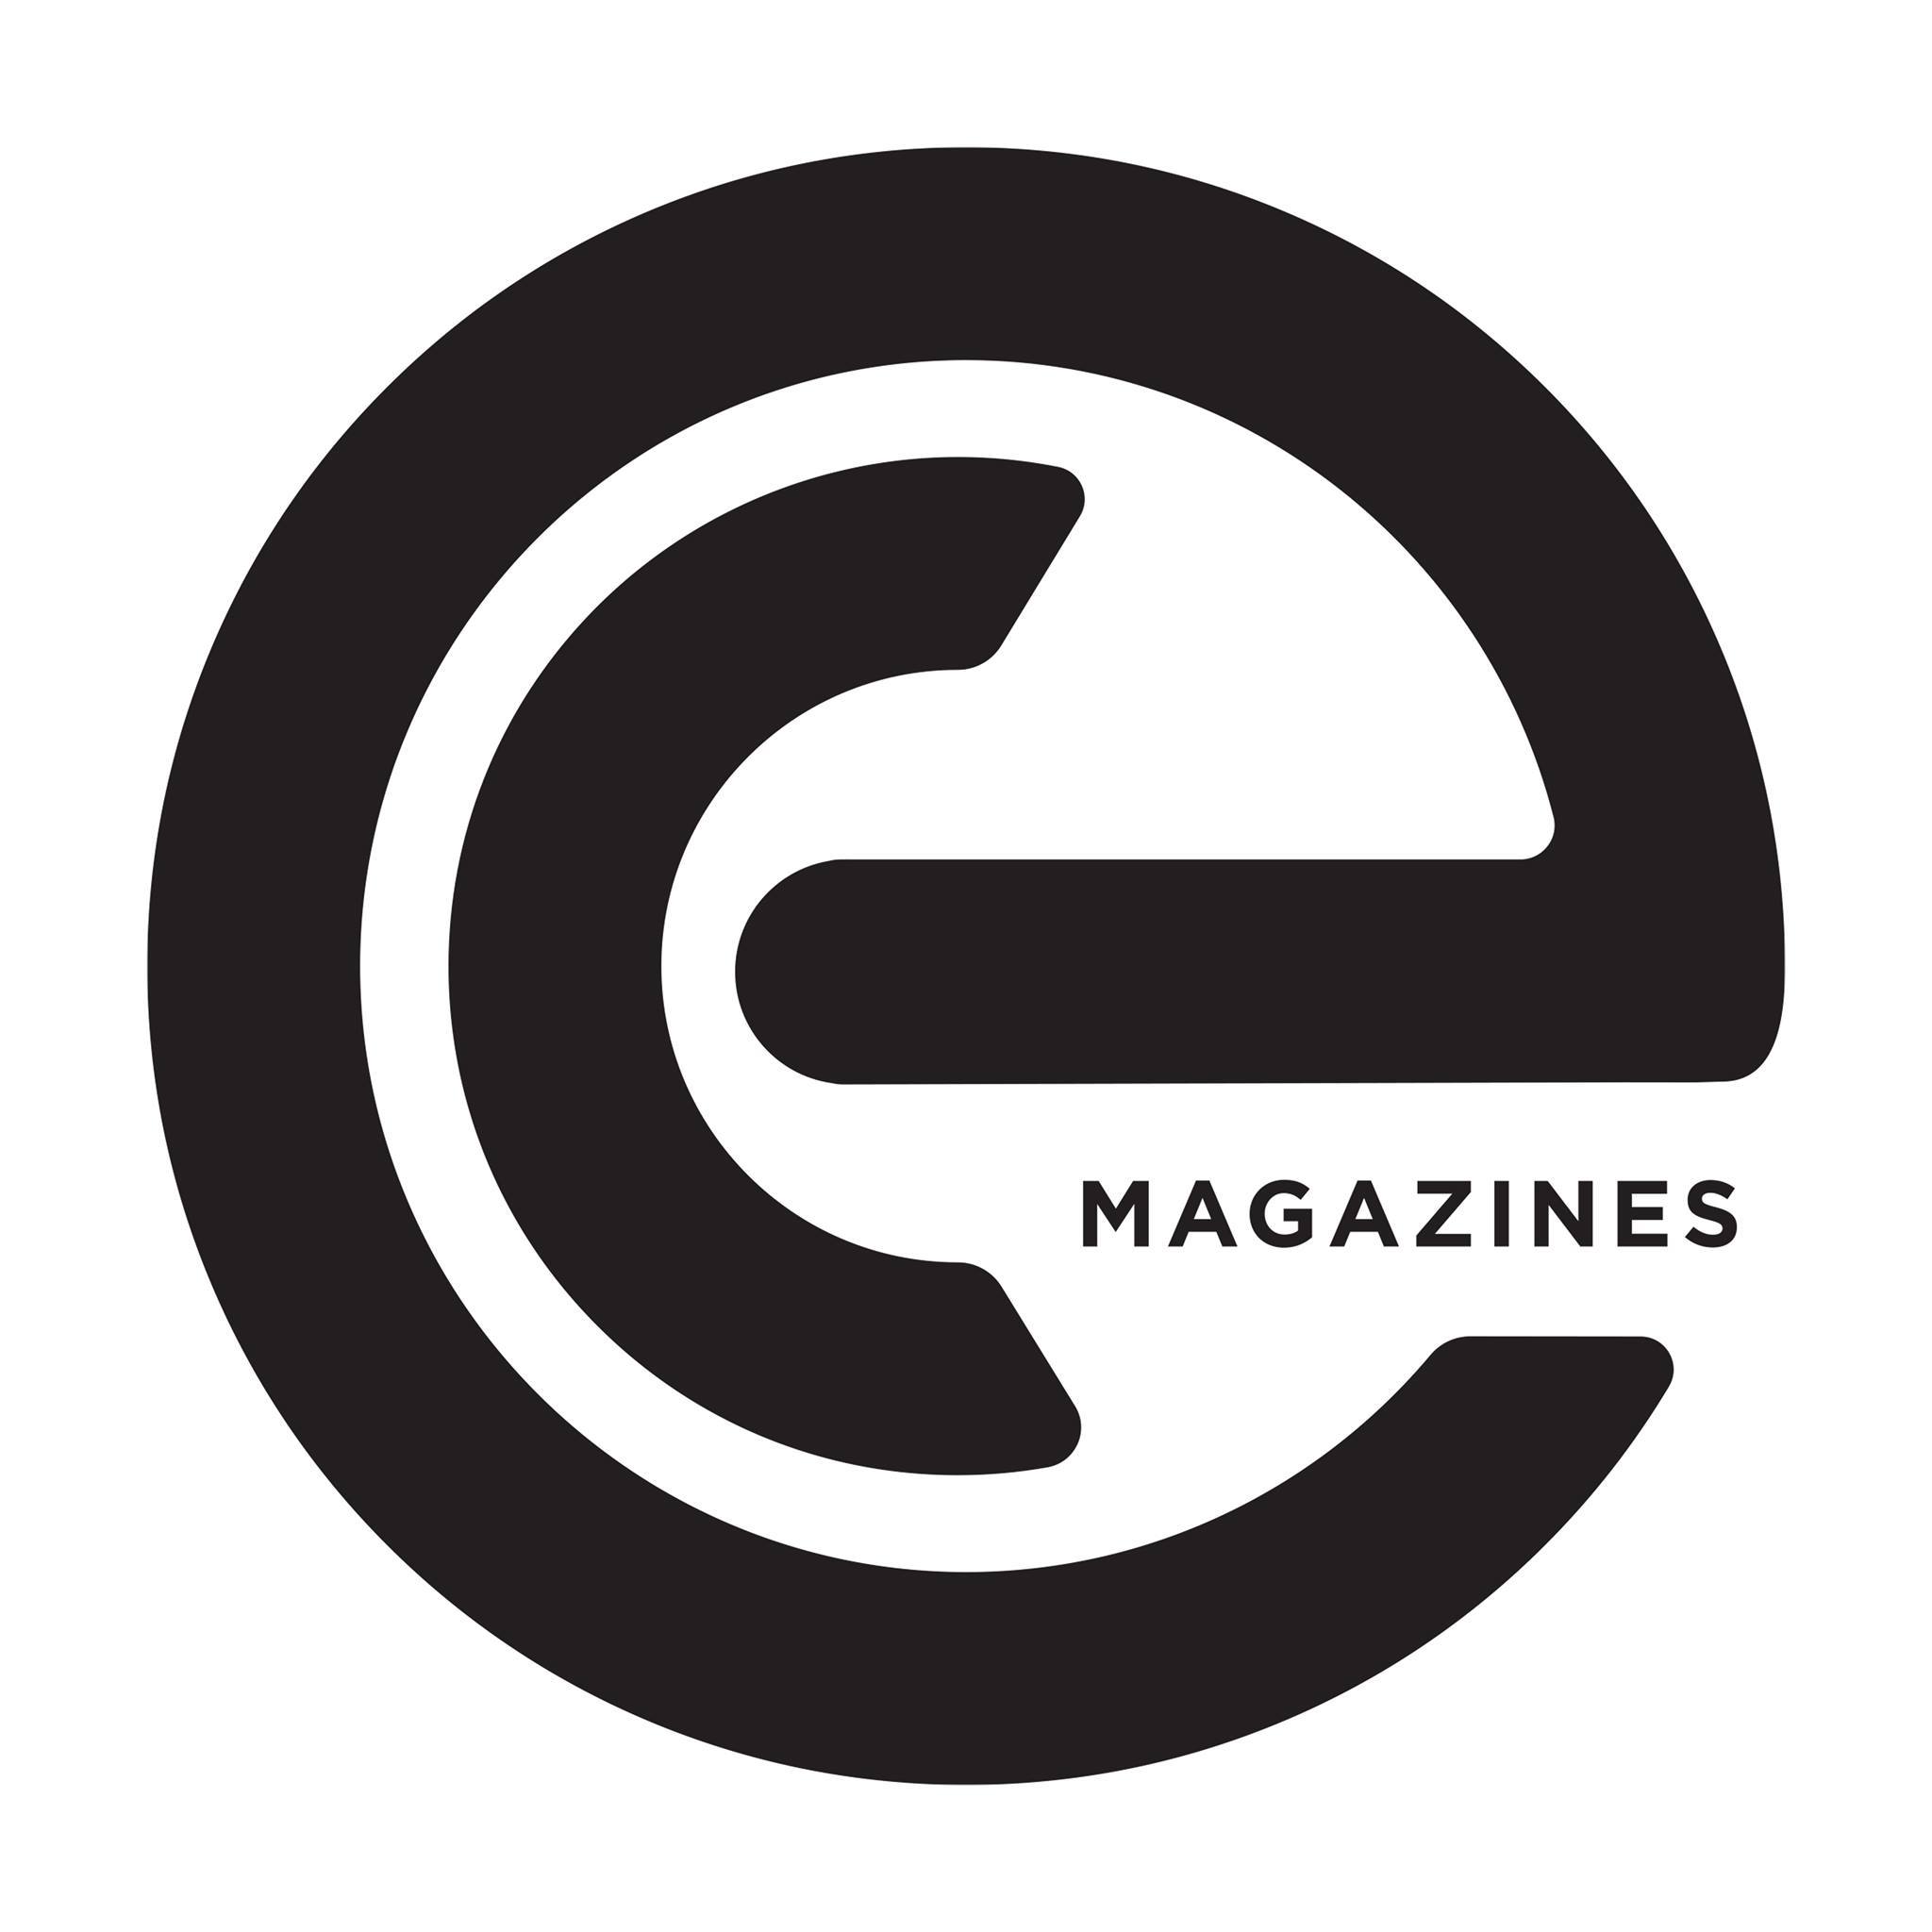 EC magazine logo